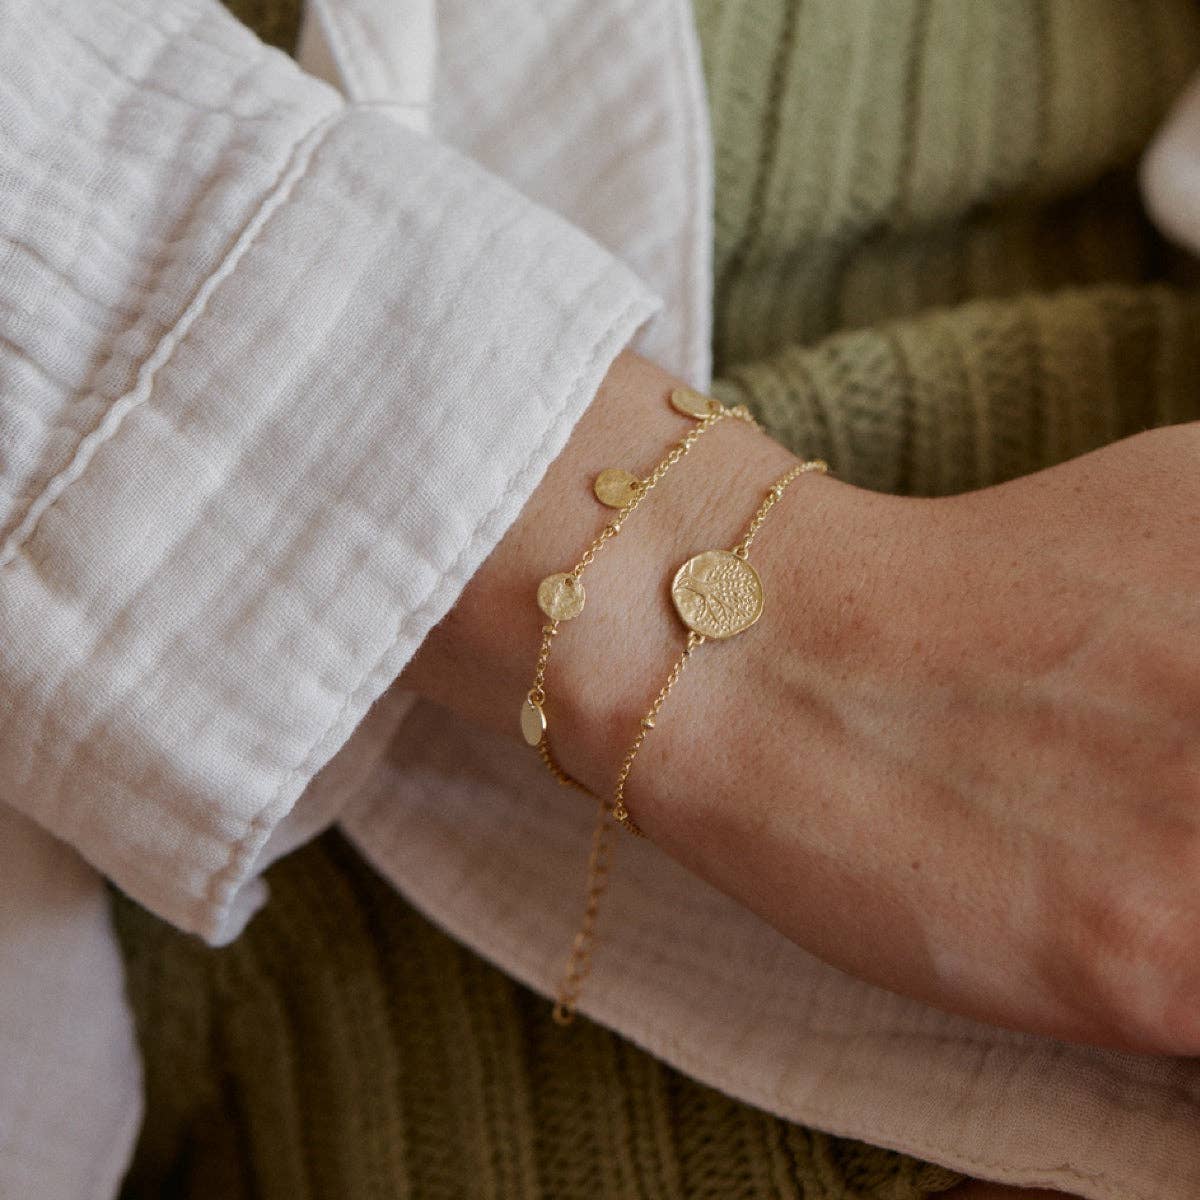 Alceste Bracelet | Jewelry Gold Gift Waterproof